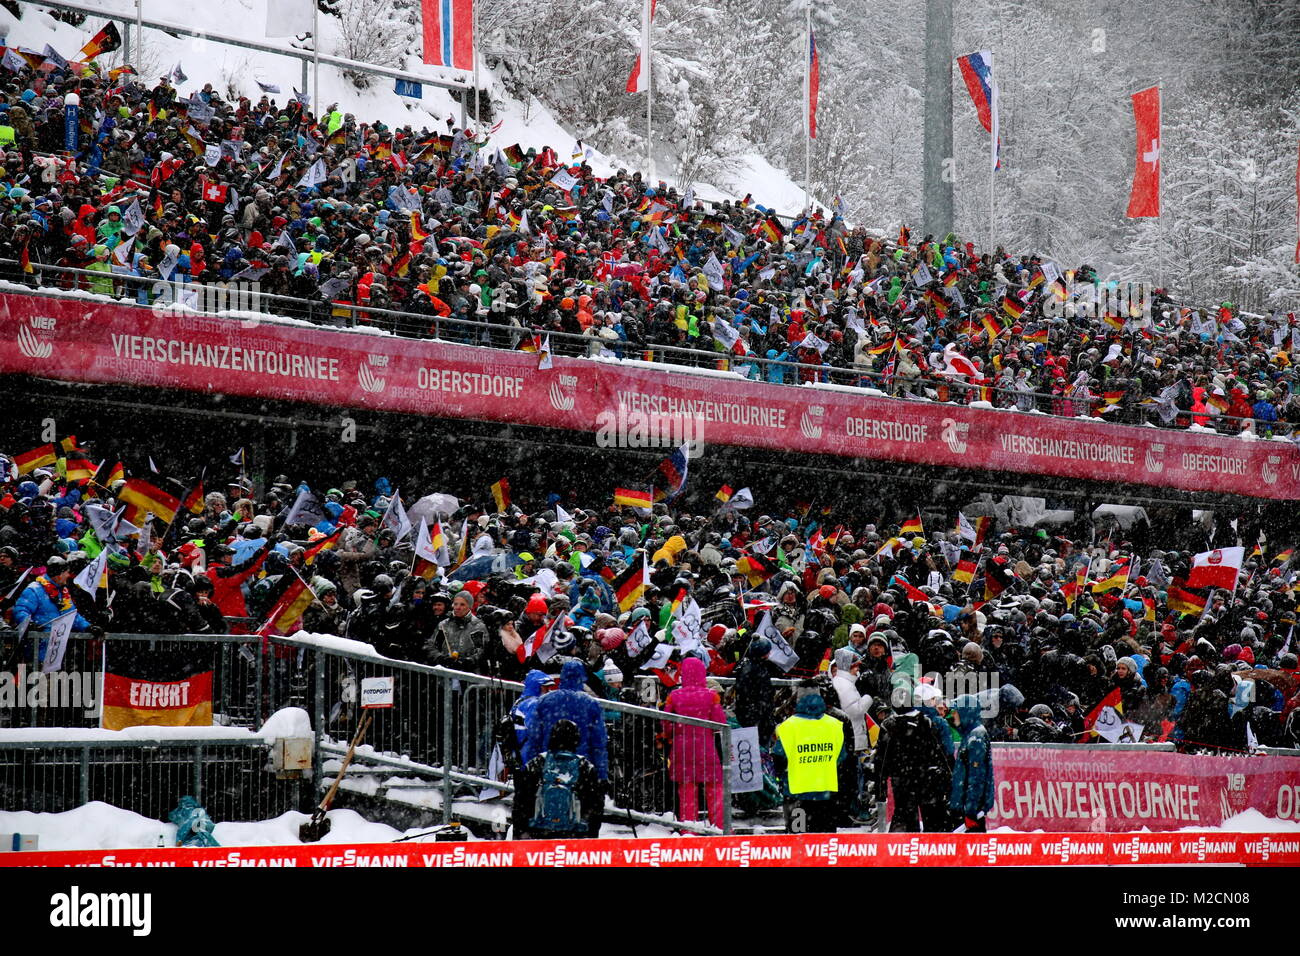 Gute Stimmung bei den Skisprungfans in der Allgäu Arena von Oberstdorf. Wegen starkem Schneefall musste der Probedurchgang um 30 Minuten verschoben werden. 1. Wettkampf der  63. Vierschanzentournee Auftaktspringen Oberstdorf Stock Photo